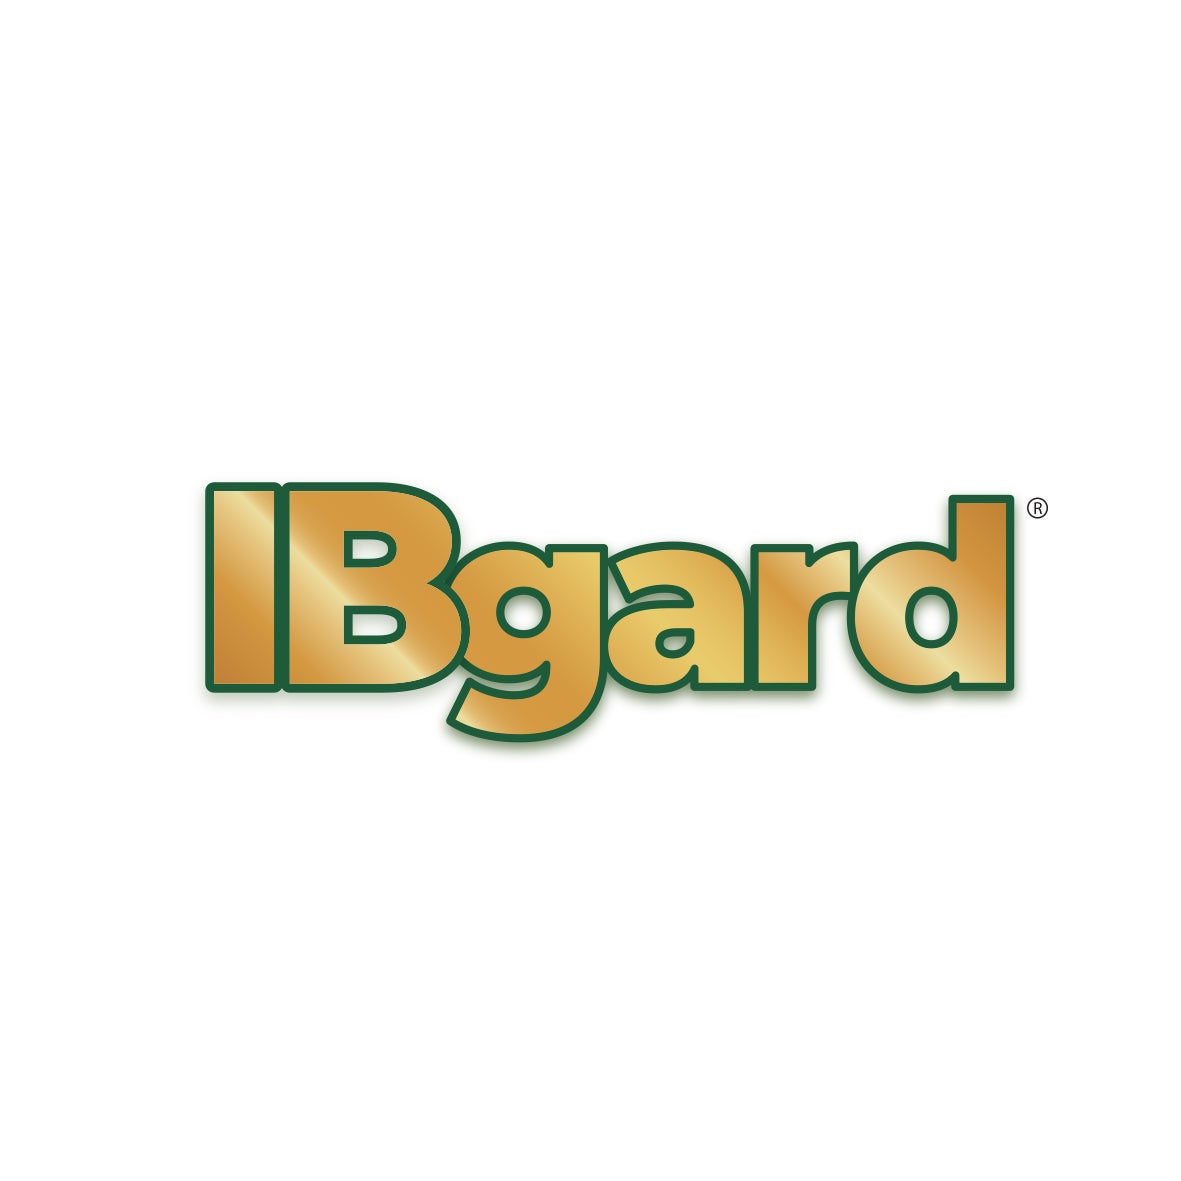 NHSc_Logos_IBGard(1)